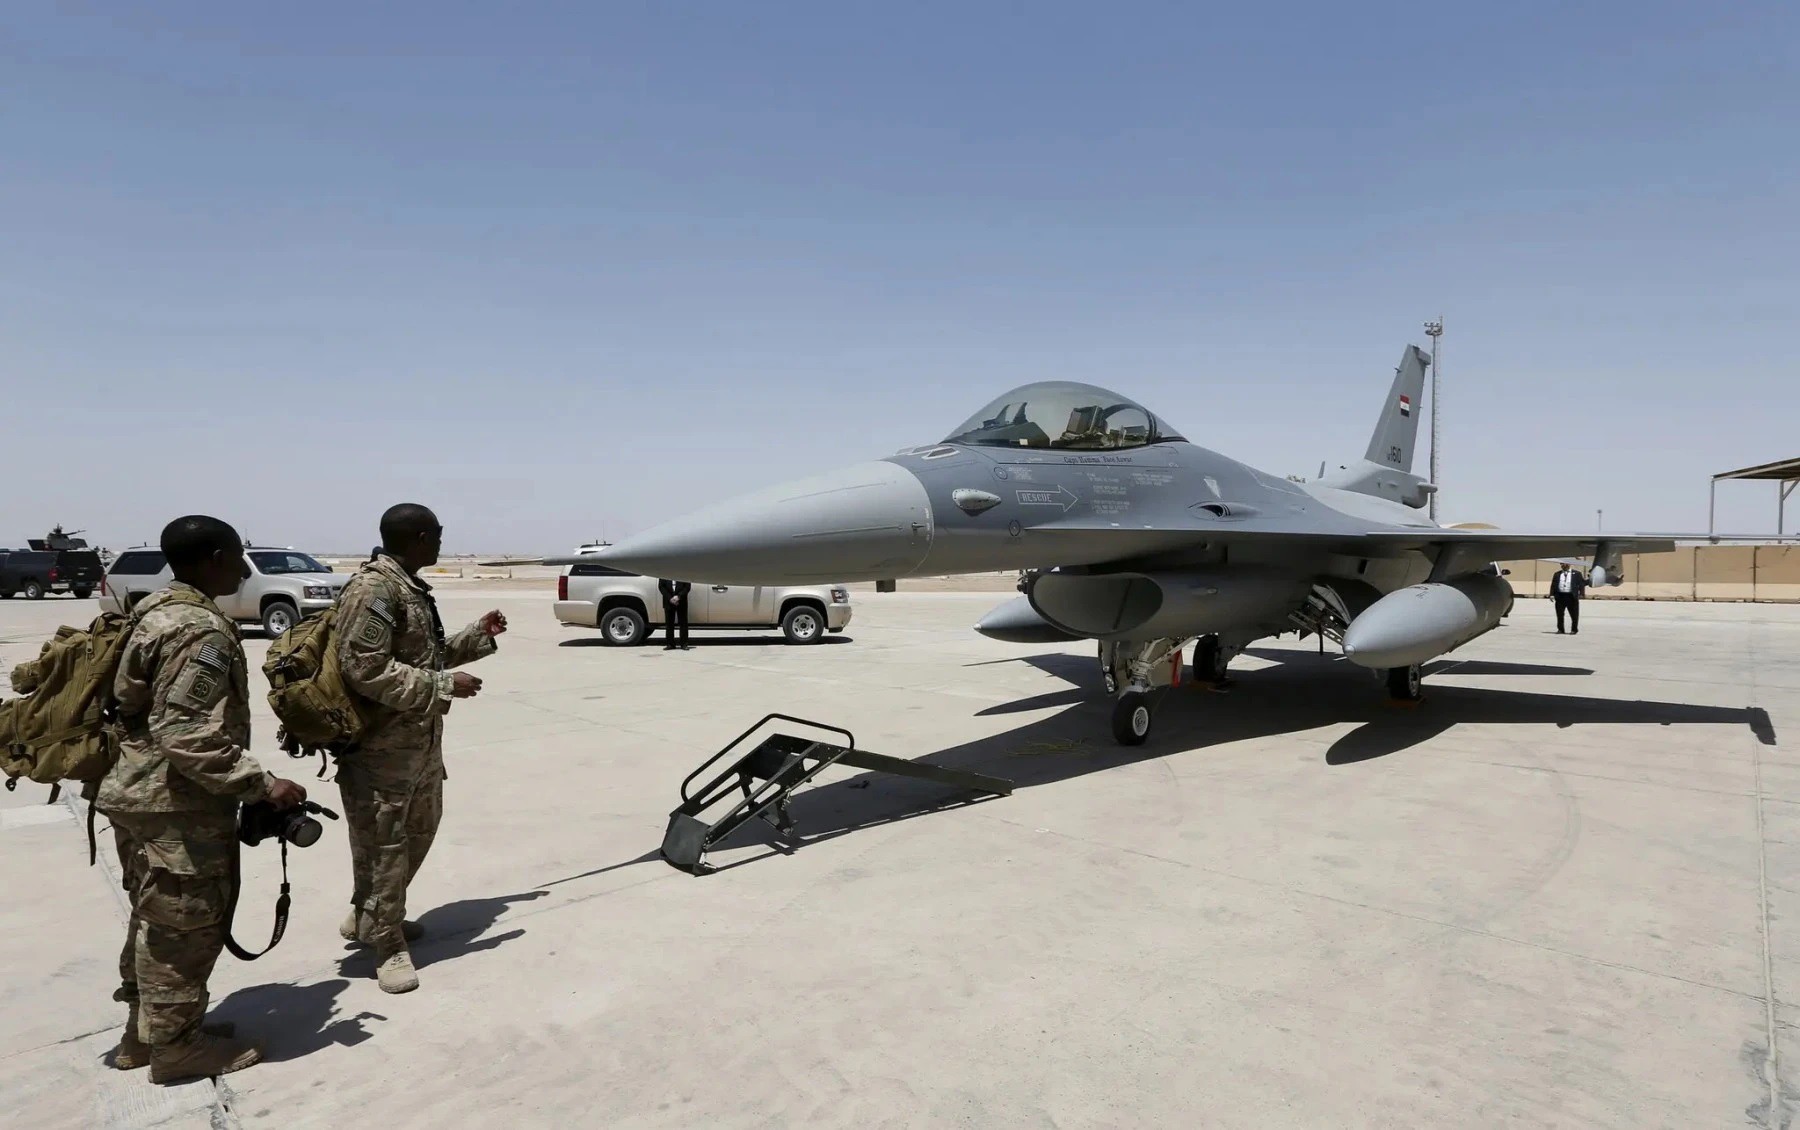 Tiêm kích F-16 do Mỹ sản xuất (ảnh: CNN)